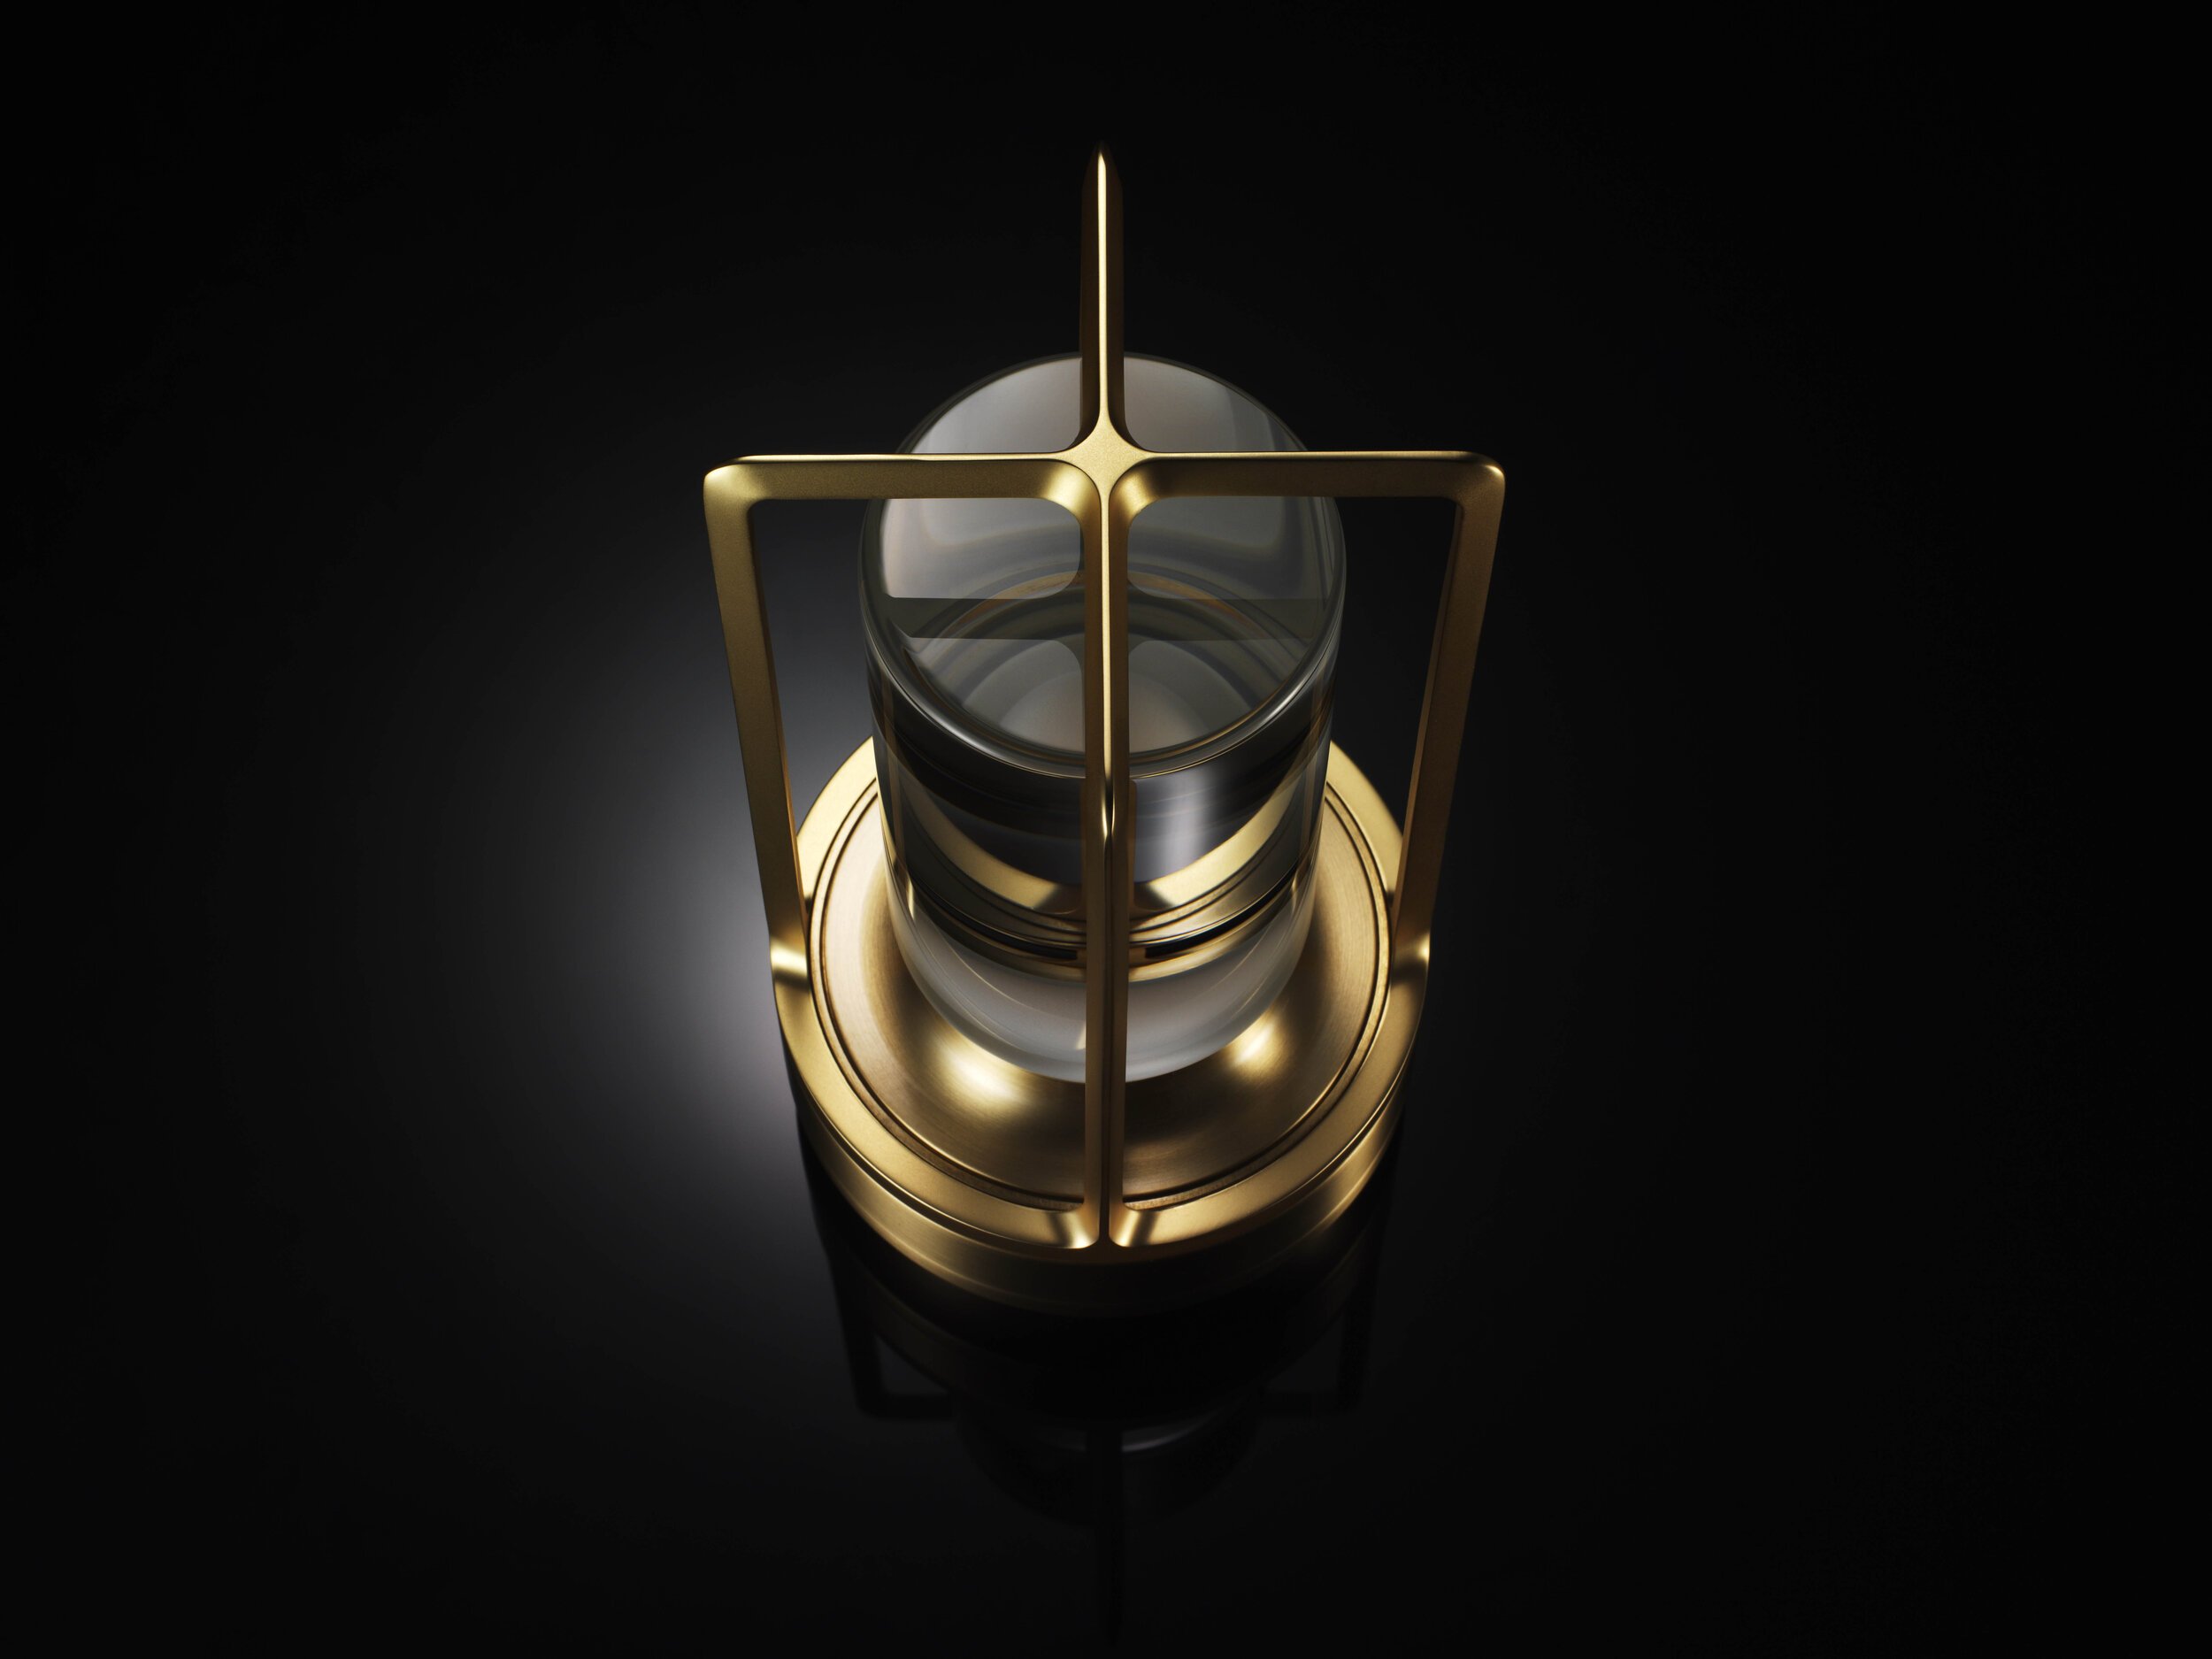  Nao Tamura 田村奈穂がデザインを手掛けた、アンビエンテックの照明器具「TURN+（ターンプラス）」。ケージはダイキャスト製 